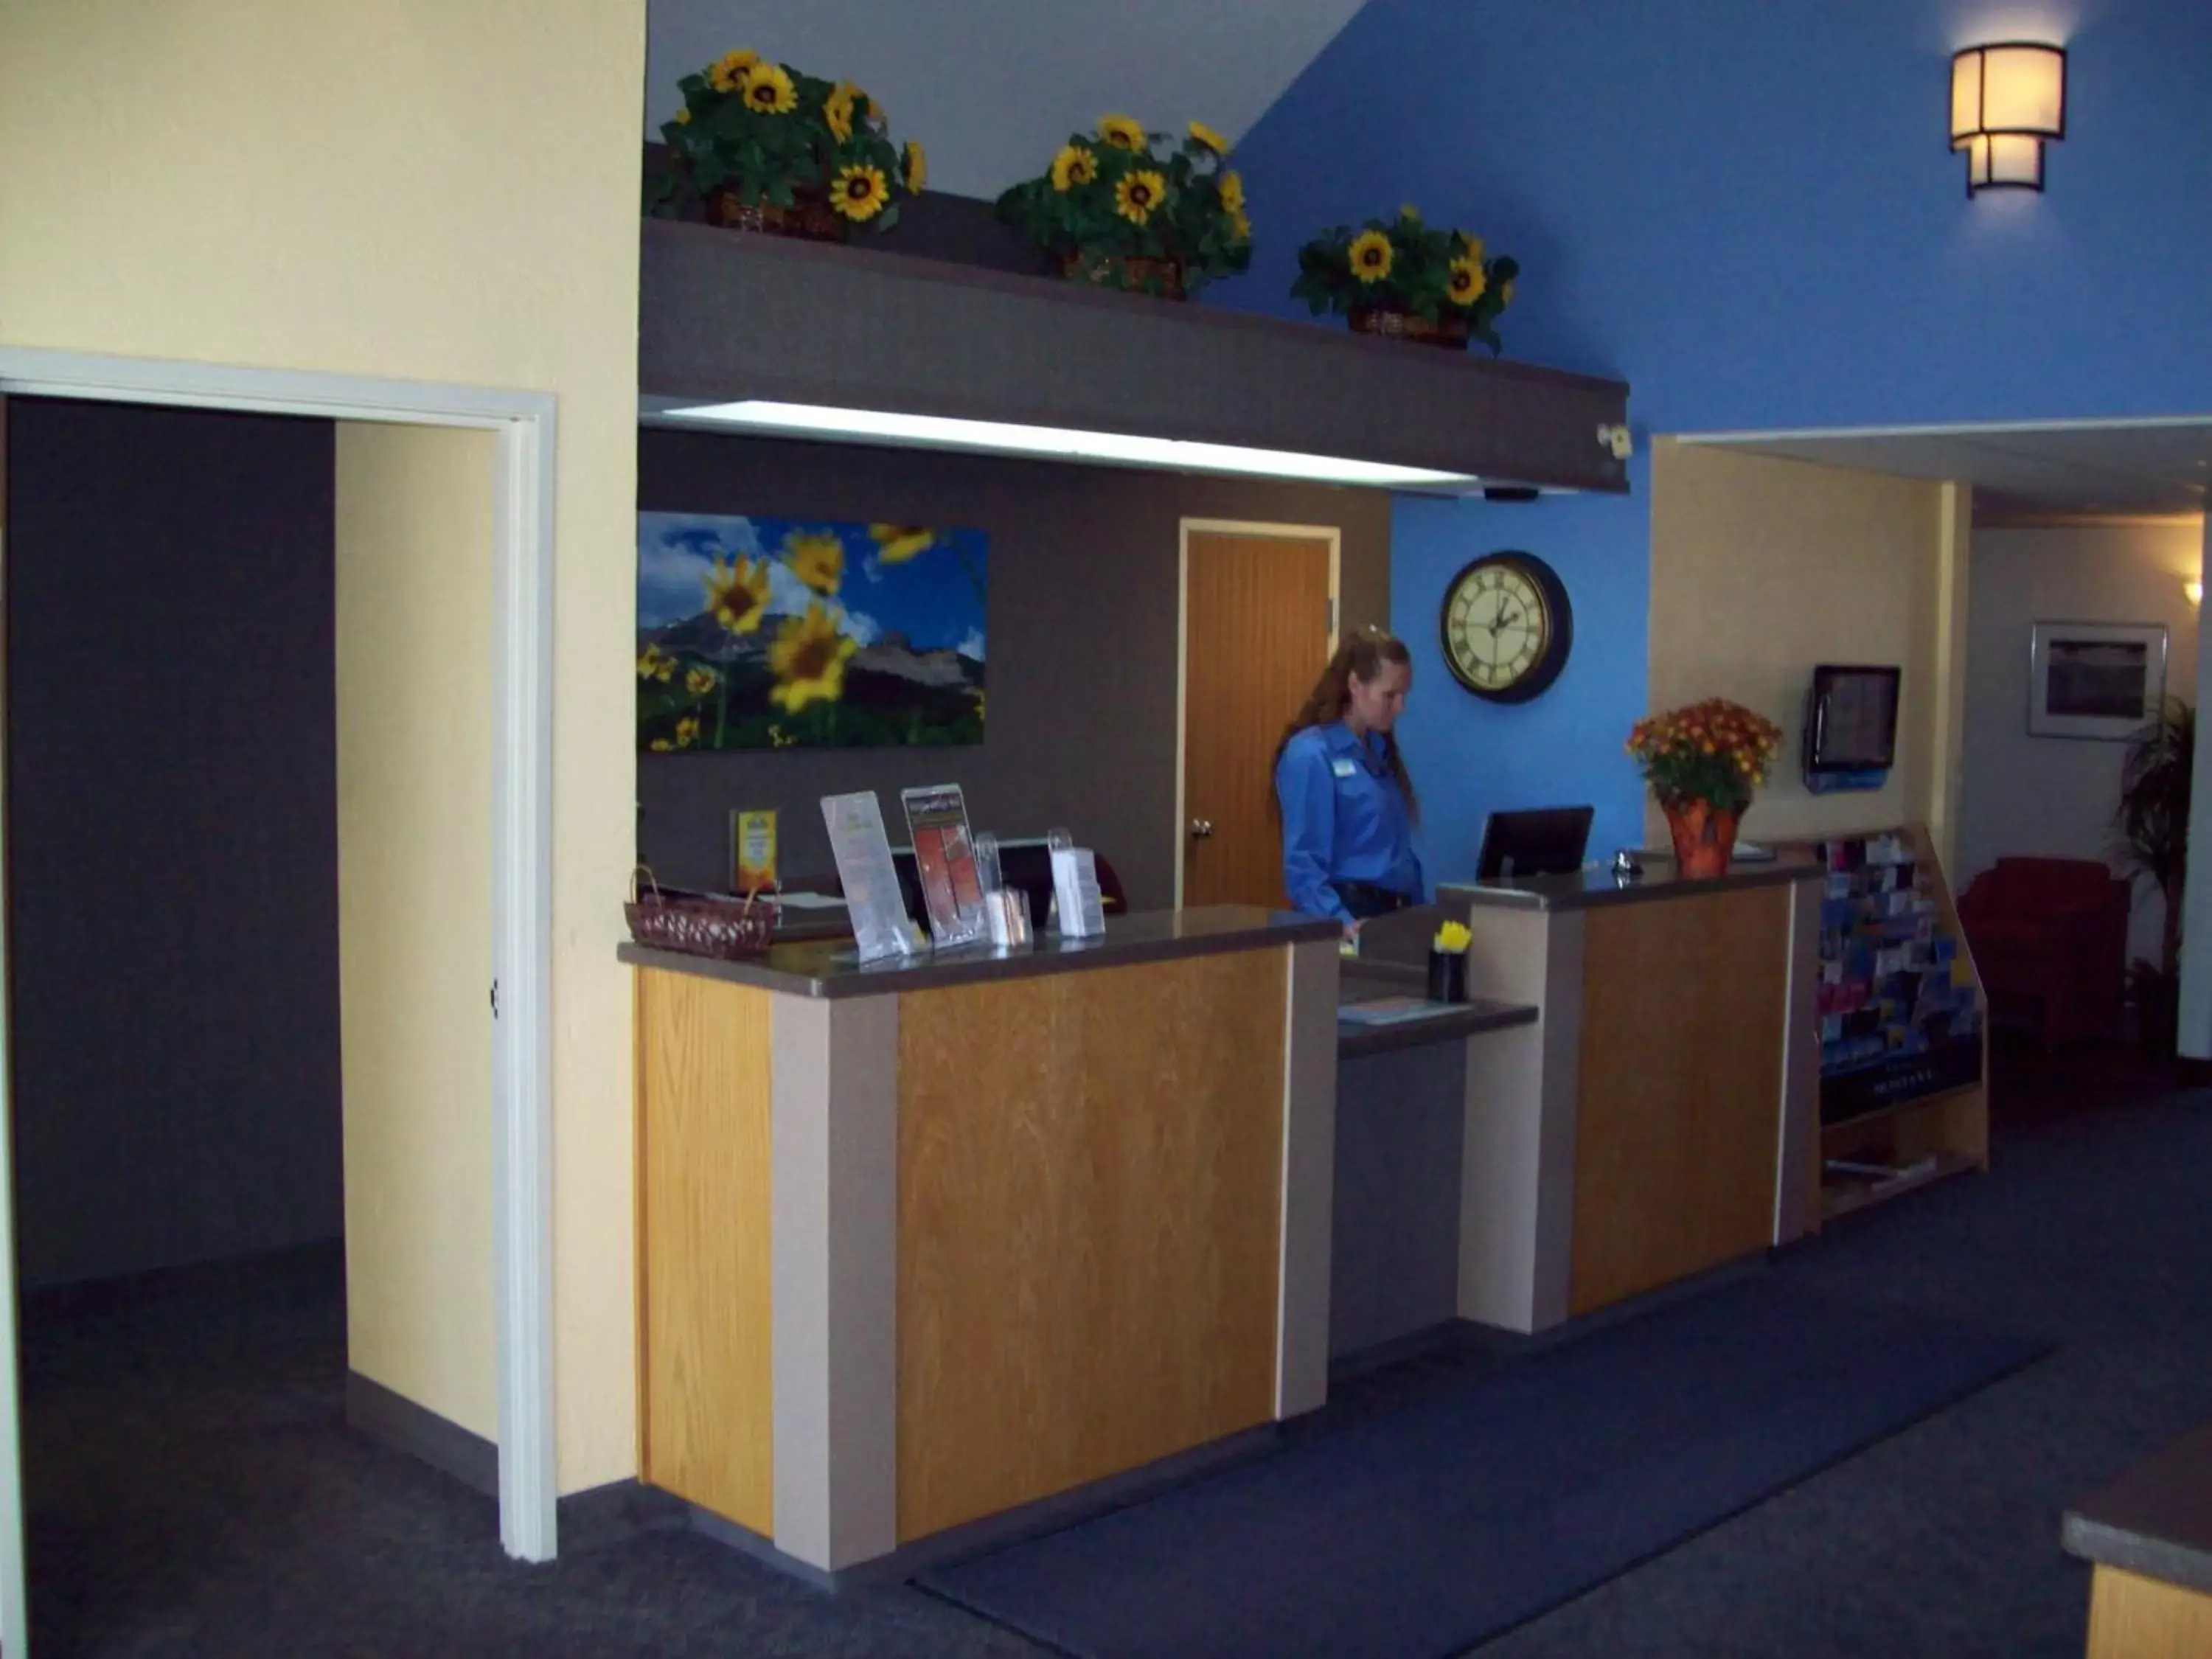 Lobby or reception, Lobby/Reception in Days Inn by Wyndham Great Falls